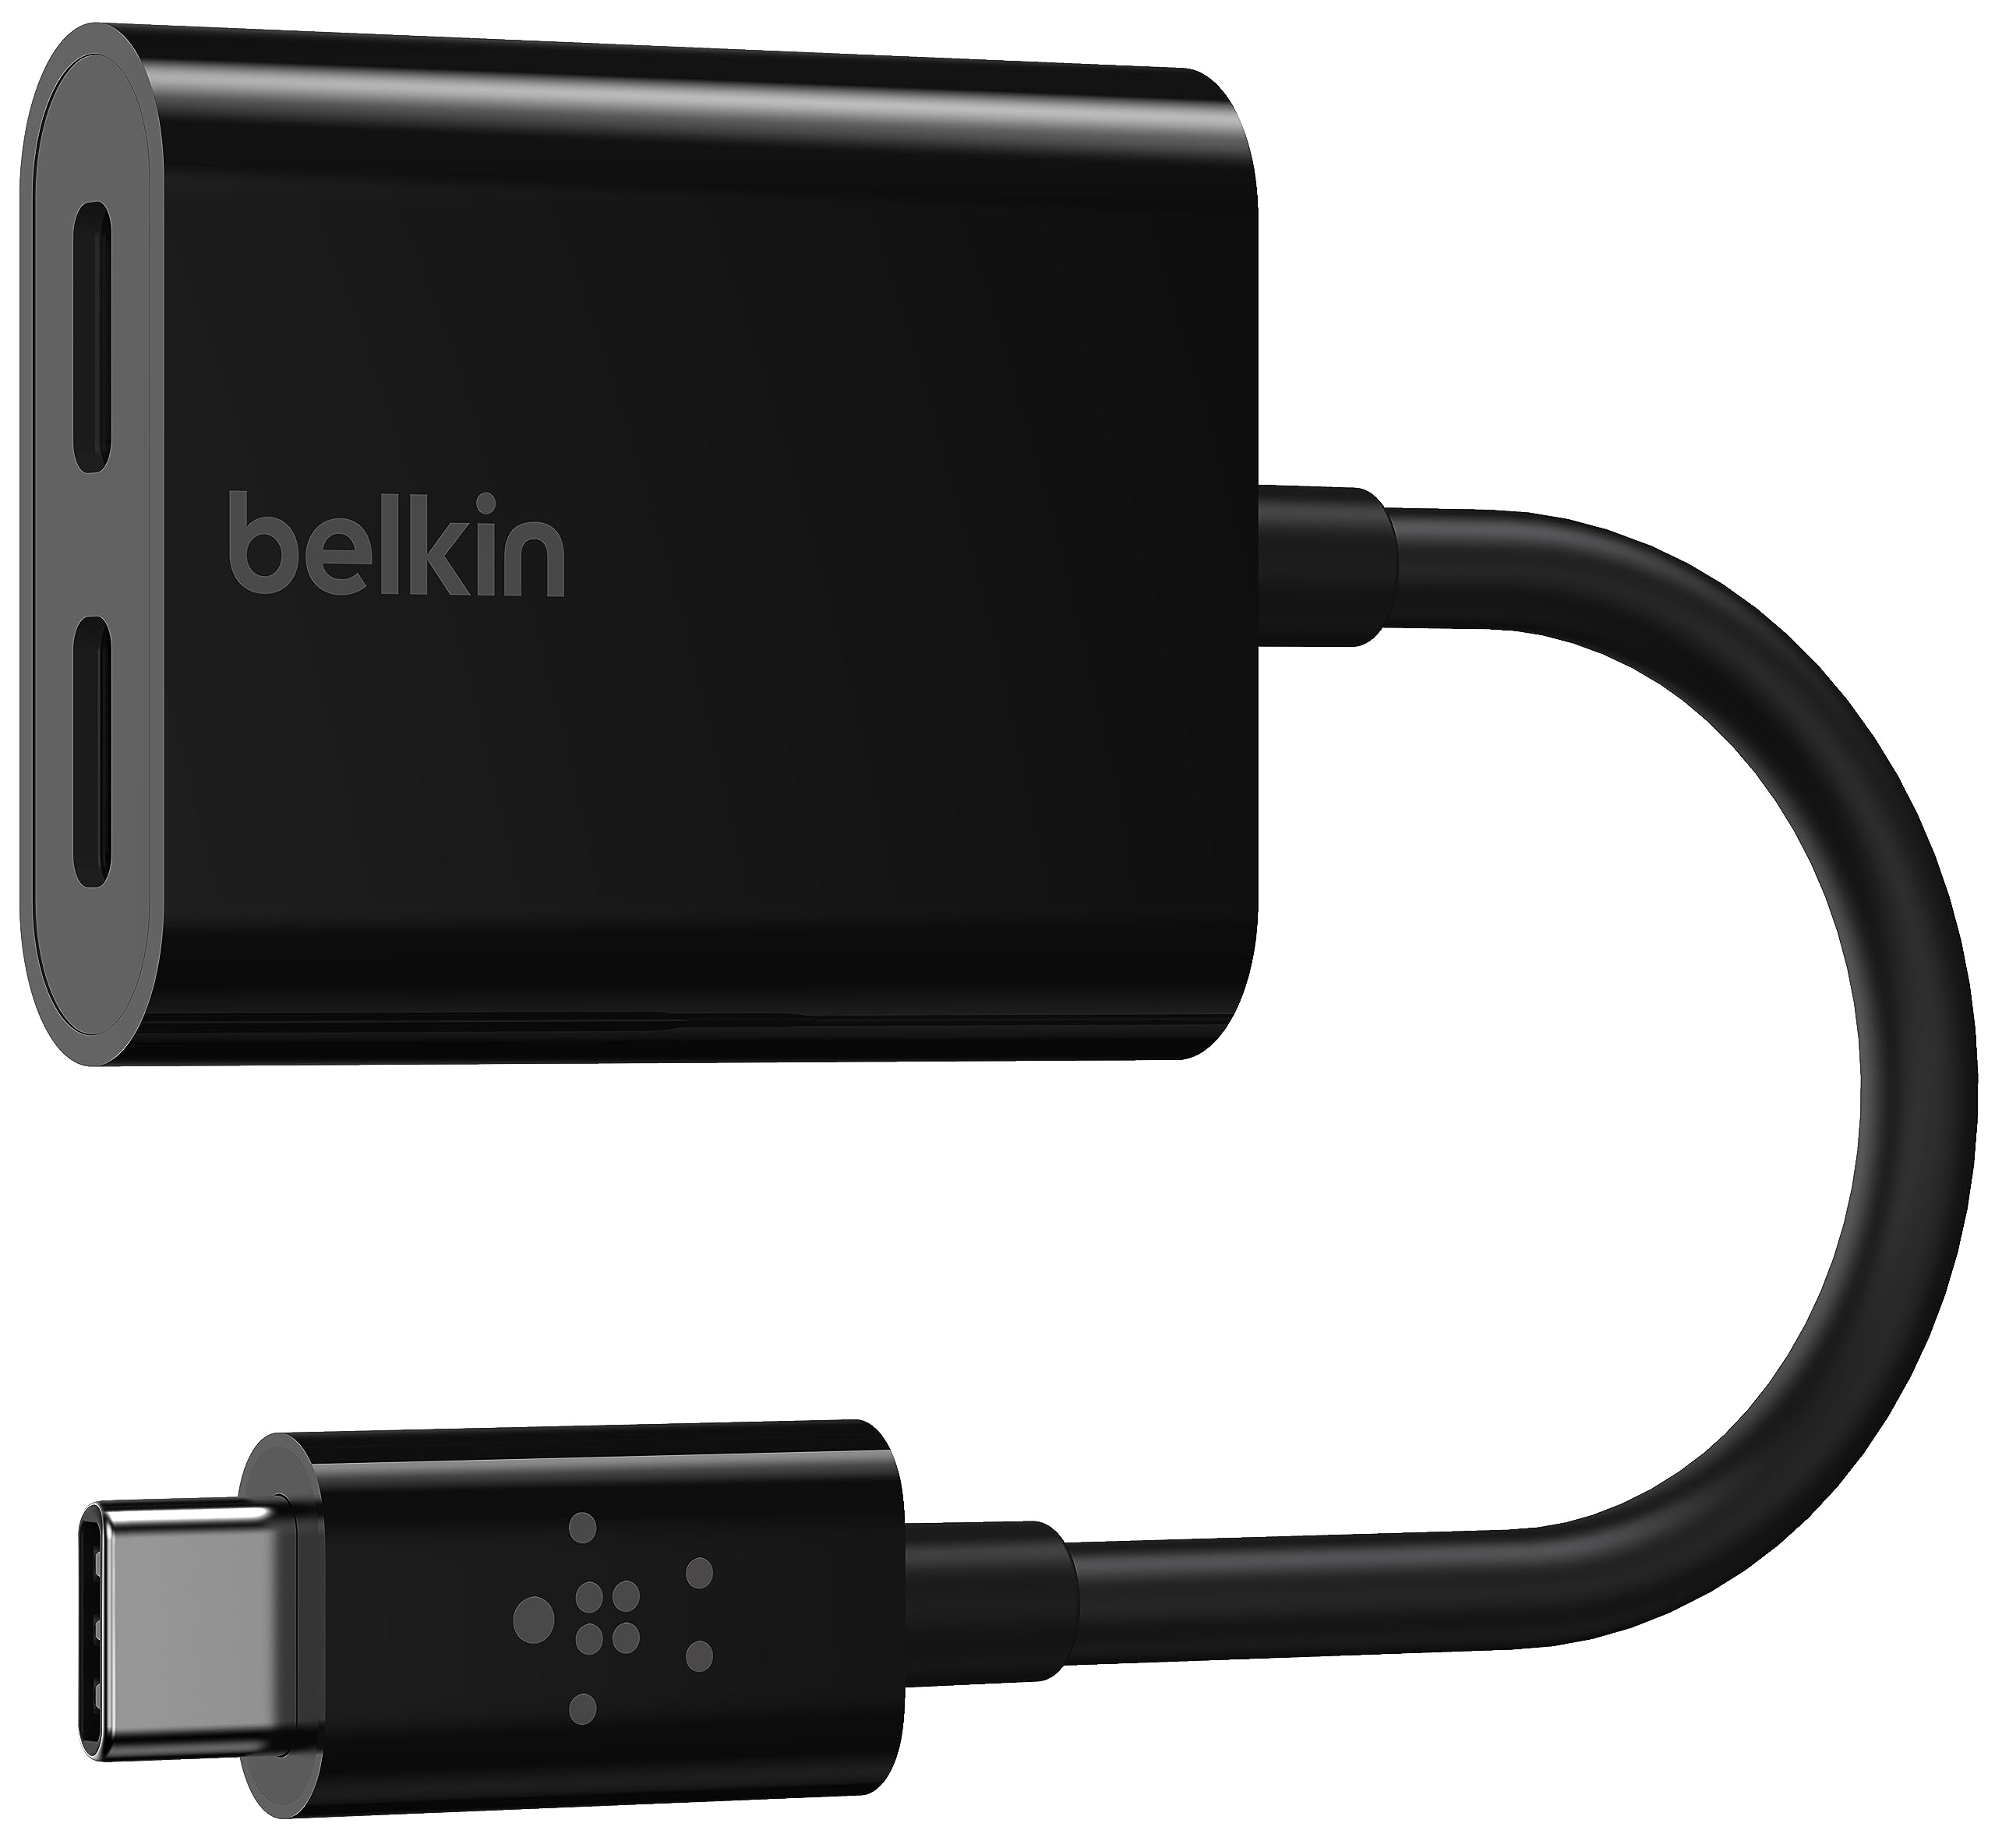 Belkin USB-C デュアルアダプター Andoroid スマートフォン Galaxy/Xperia/Google Pixel/iPad Pro/iPad Air(4th gen) /iPhone 15 対応 超高耐久 イヤホン・充電同時 F7U081BTBLK